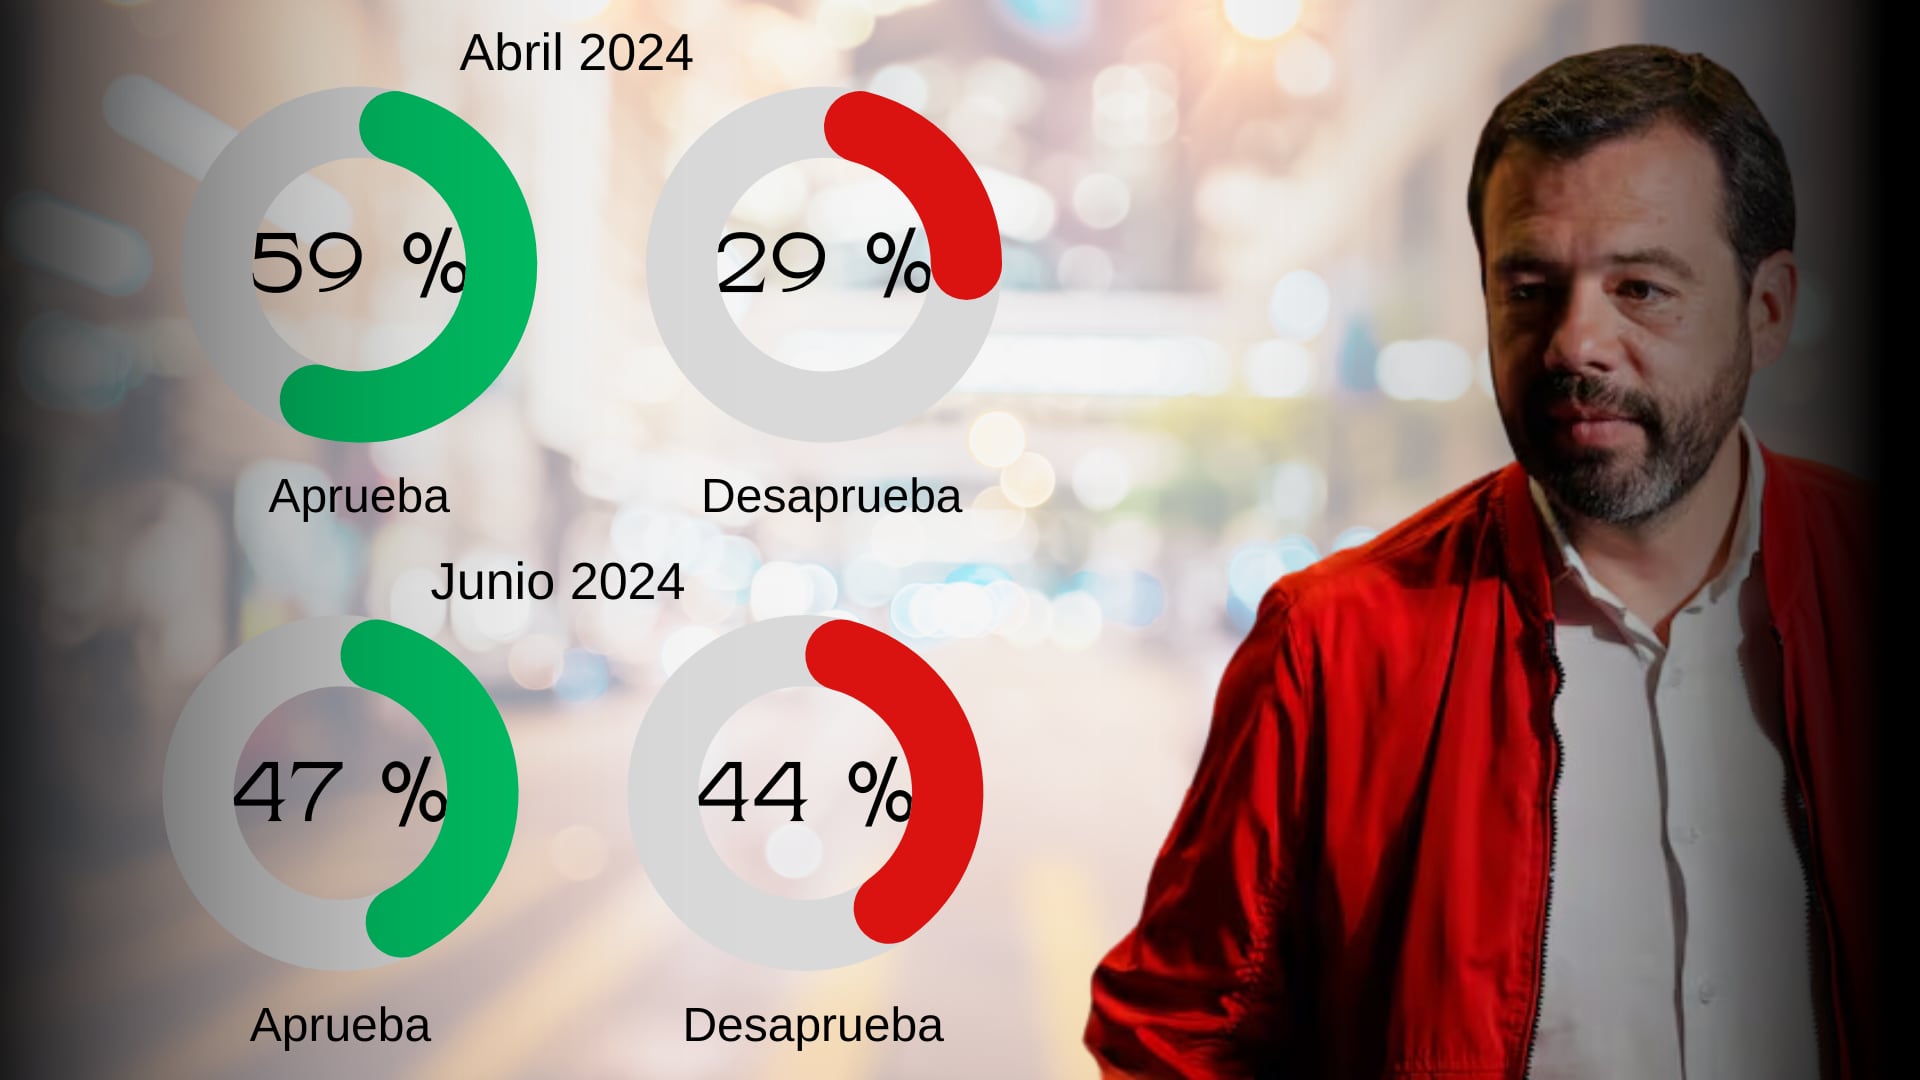 El alcalde de Bogotá, Carlos Fernando Galán, experimentó una caída en su aprobación del 12% - crédito Infobae